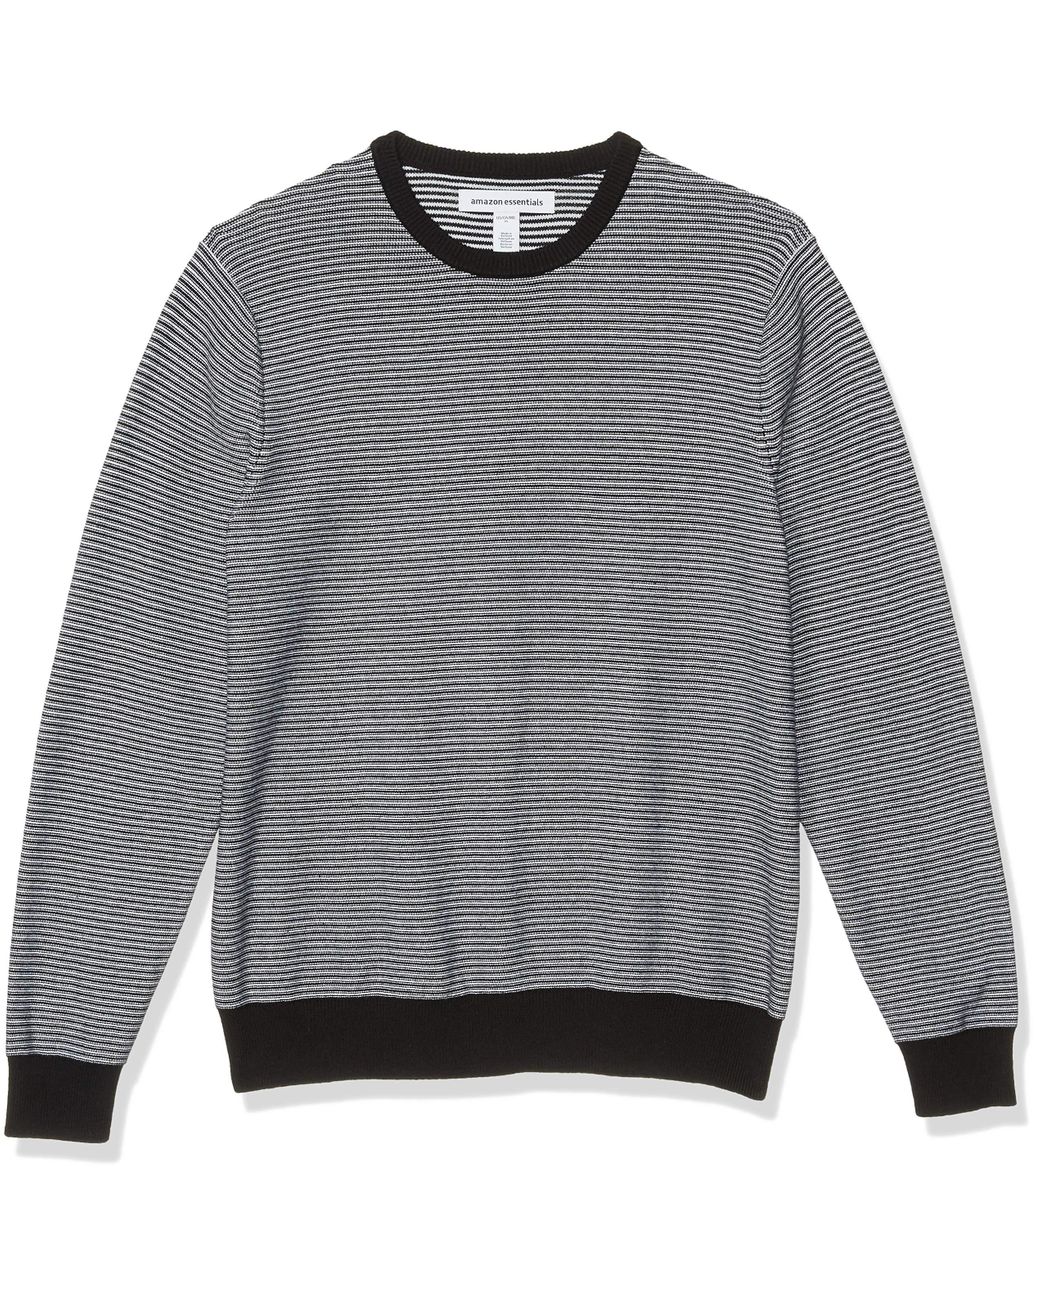 Amazon Essentials Crewneck Sweater in Black/White Stripe (Gray) for Men ...